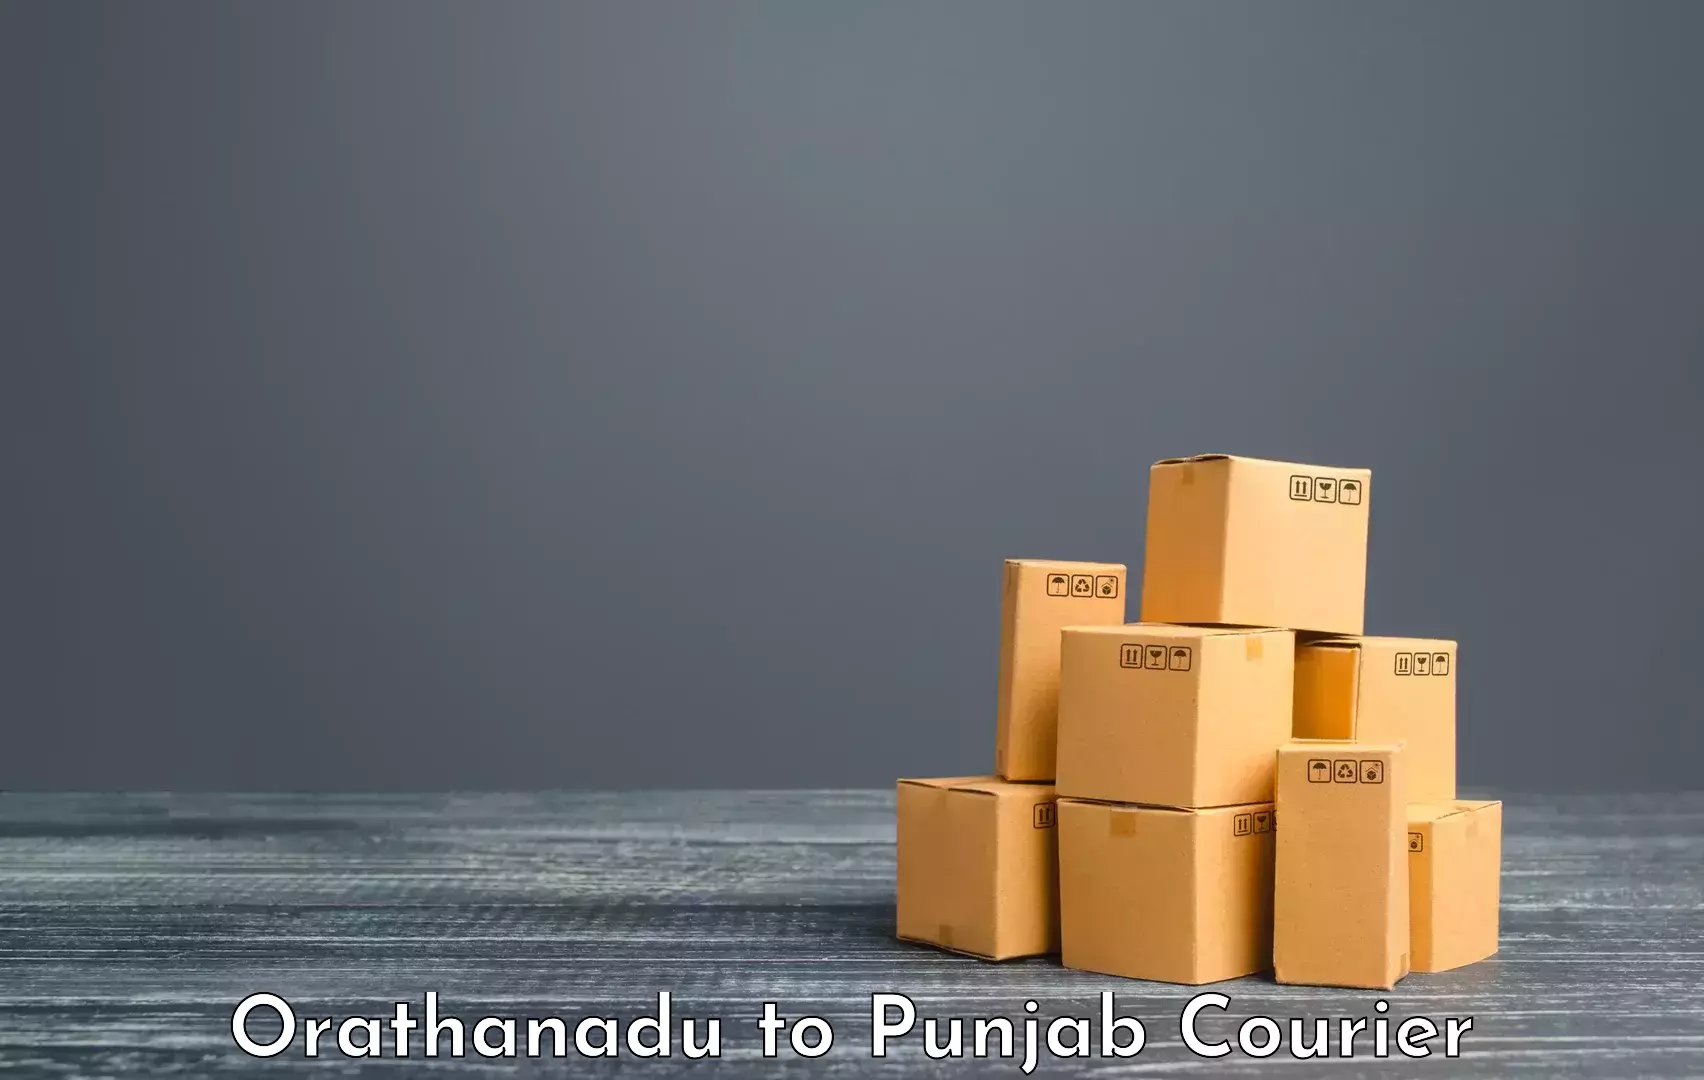 Luggage delivery network Orathanadu to Central University of Punjab Bathinda